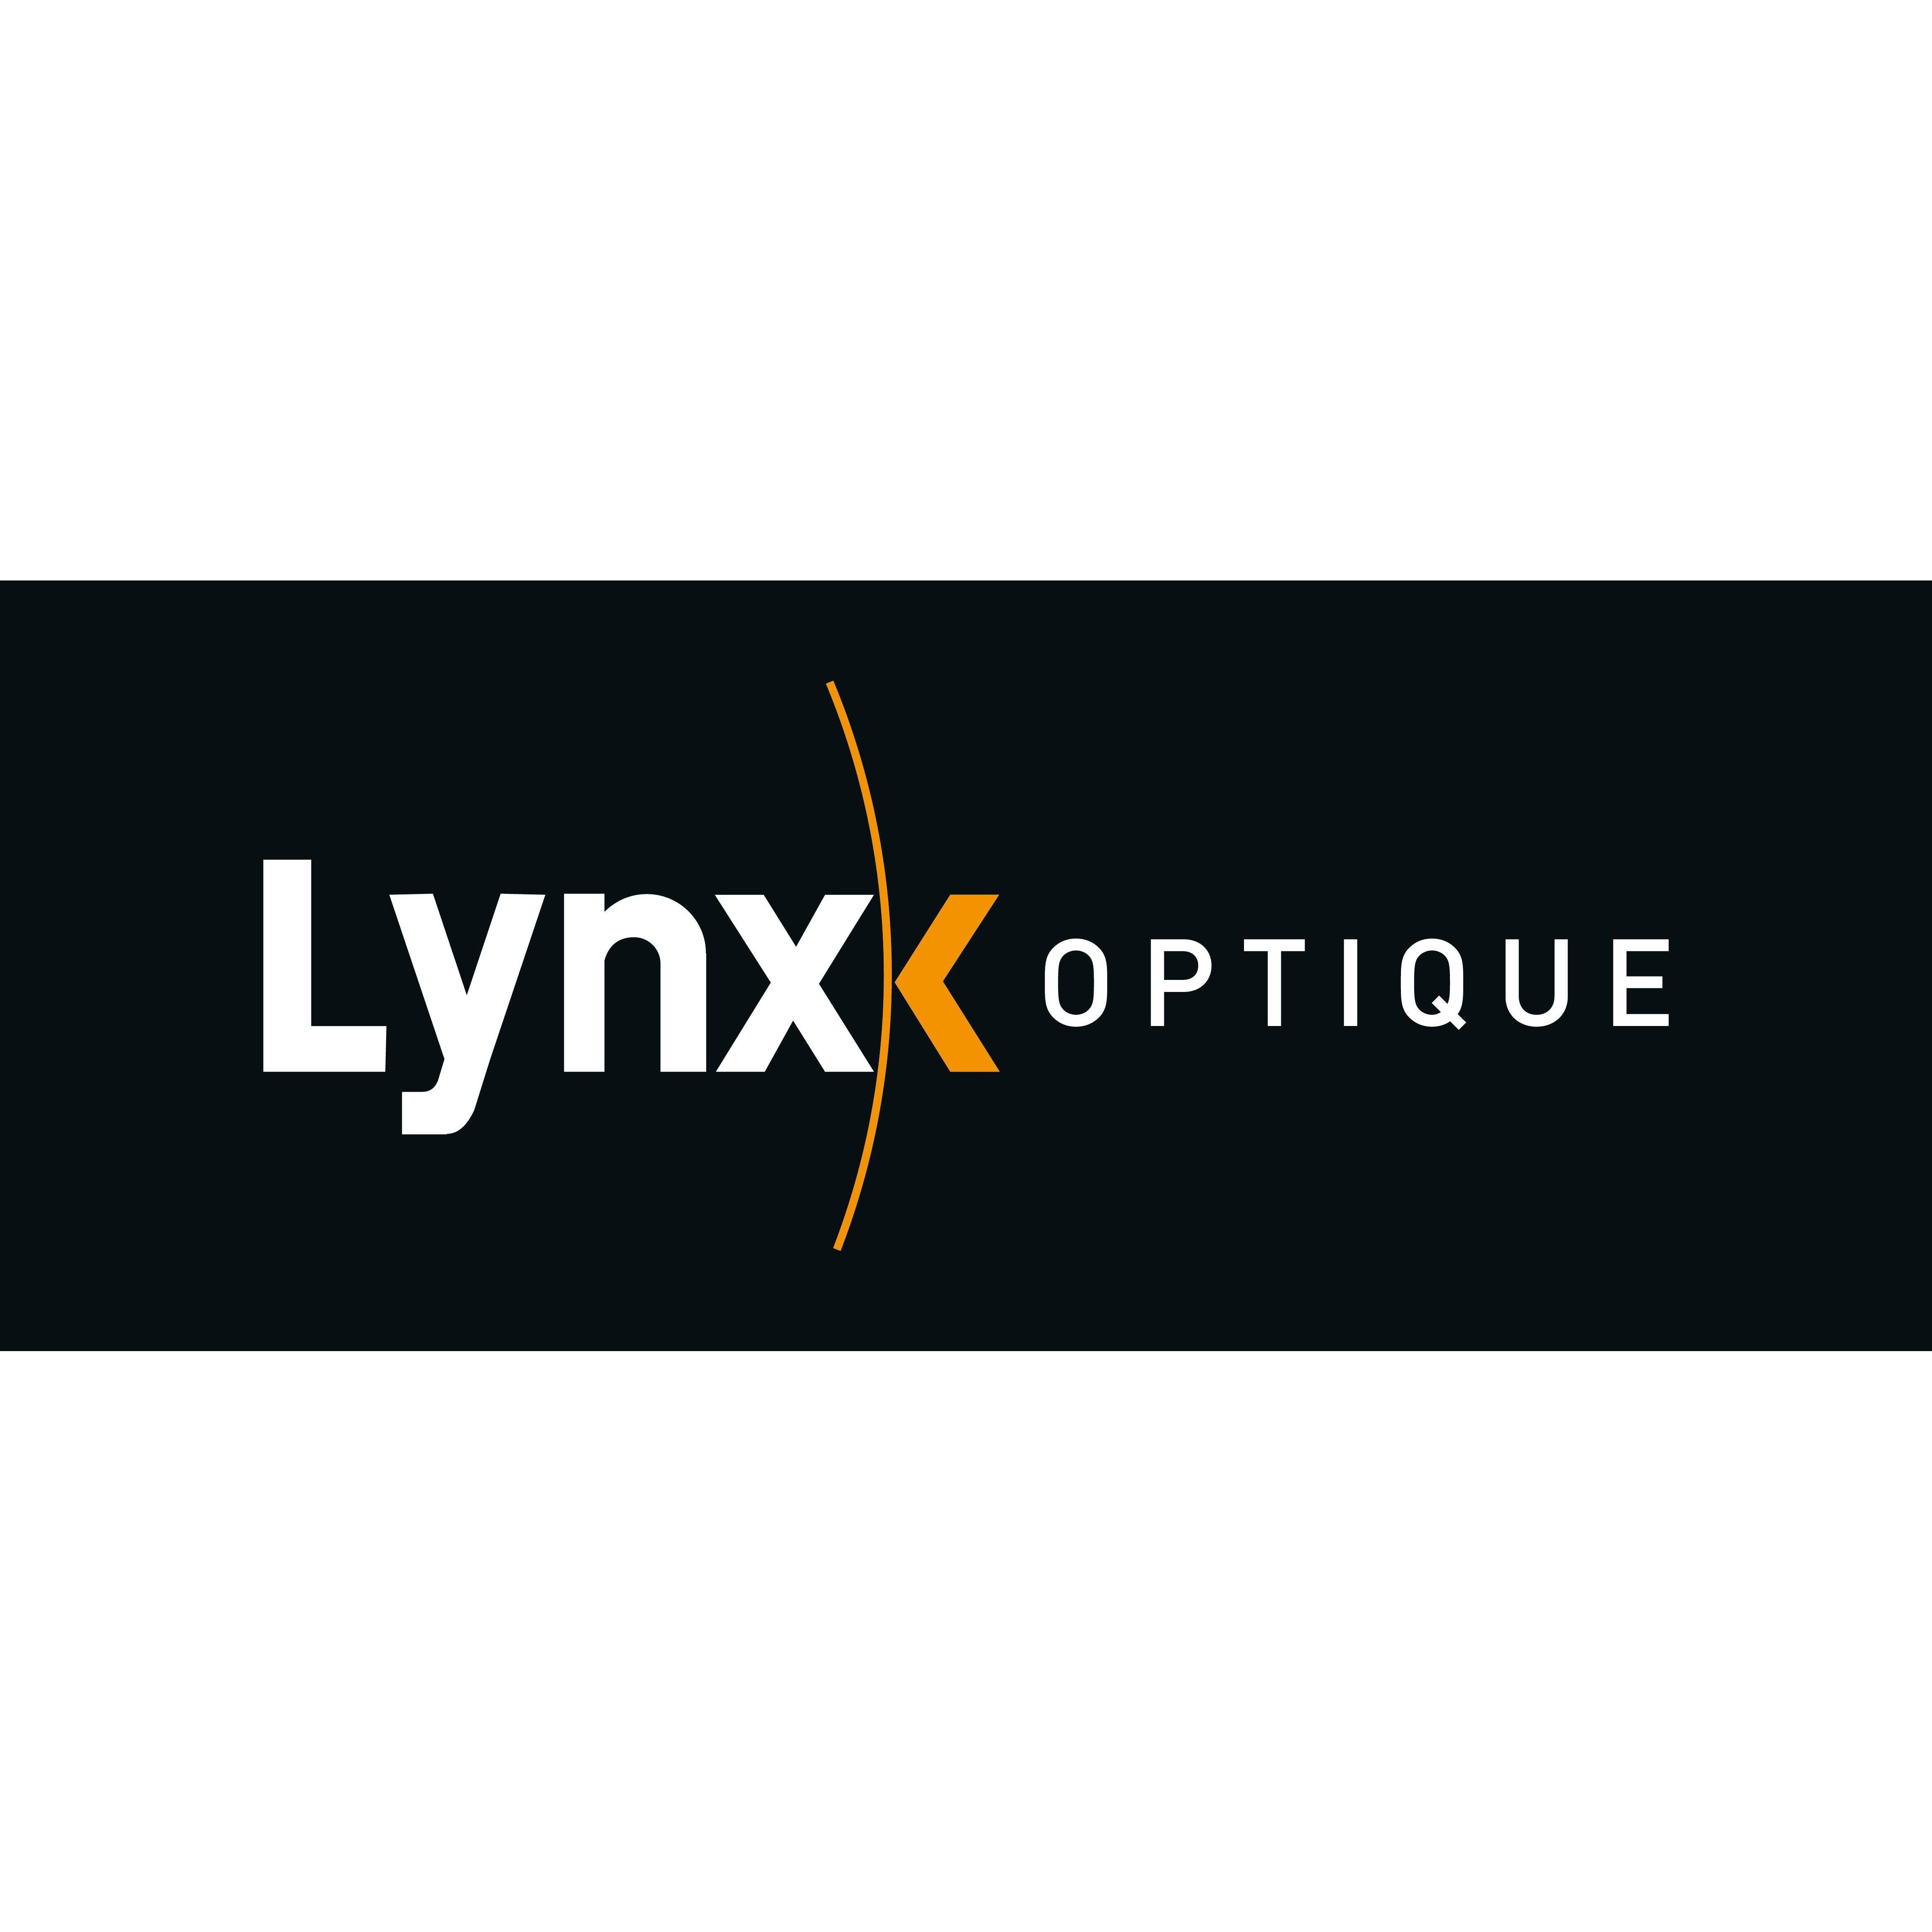 Lynx Optique meubles et accessoires de salle de bain (fabrication)